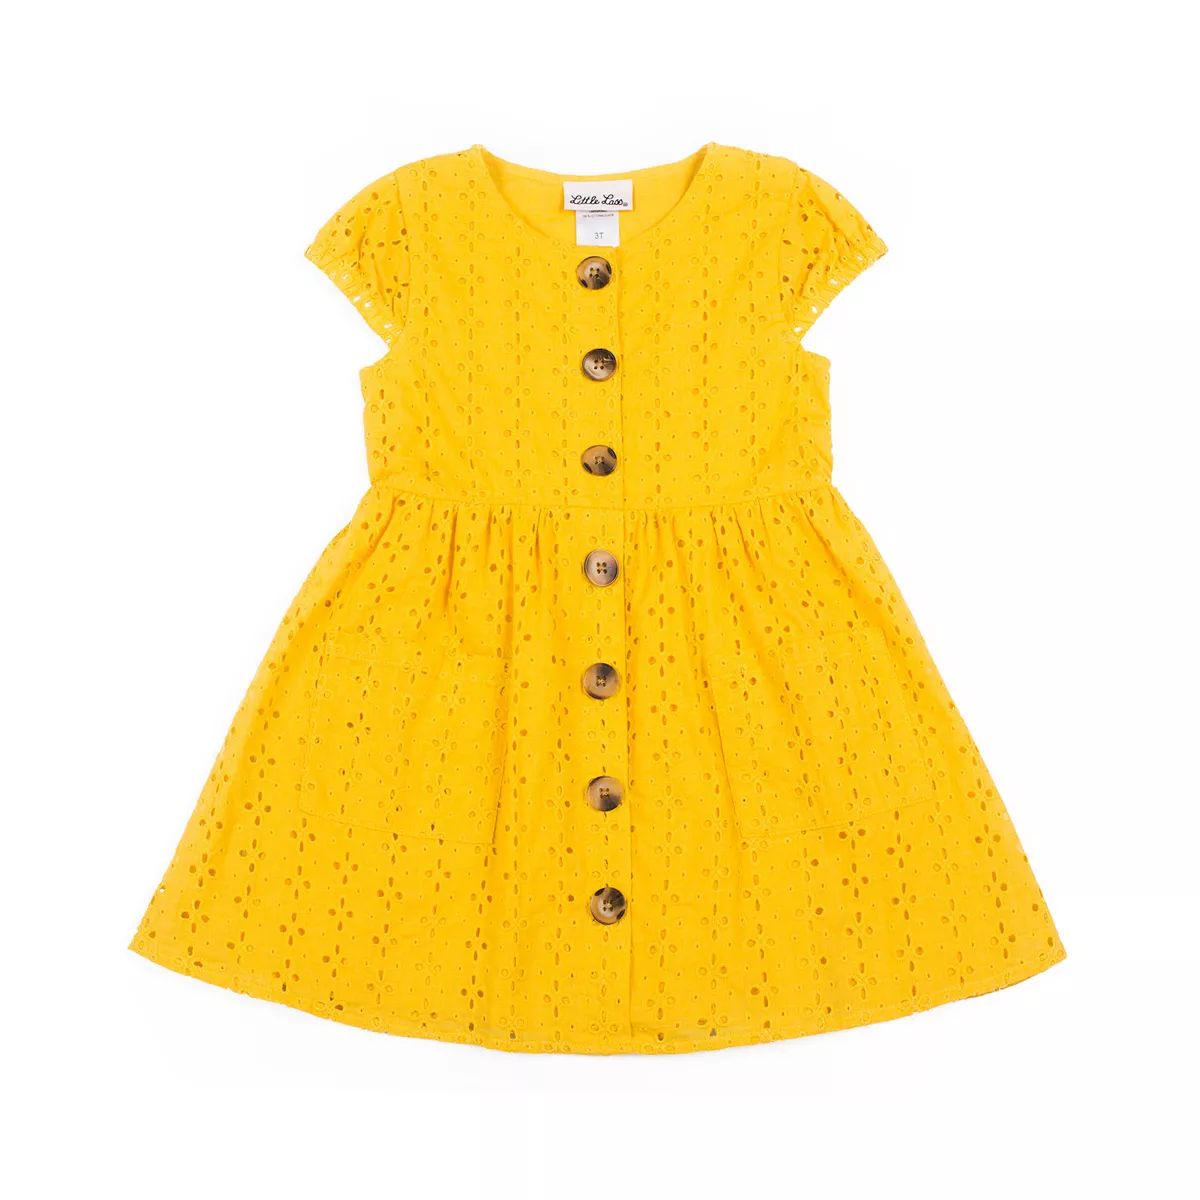 Toddler Girl Little Lass Yellow Dress | Kohl's